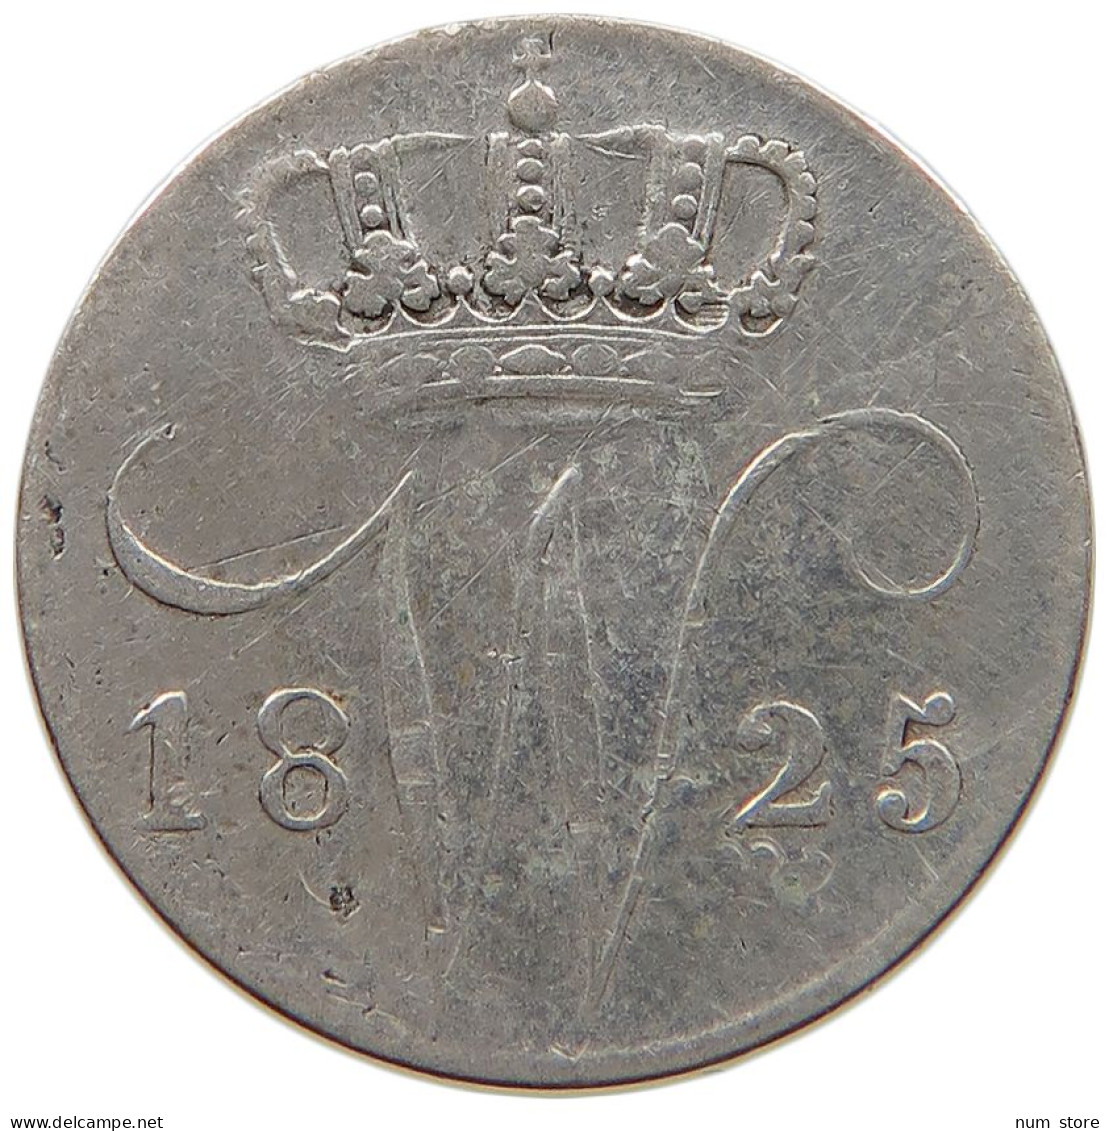 NETHERLANDS 5 CENTS 1825 B WILLEM I. 1815-1840 #t160 0337 - 1815-1840: Willem I